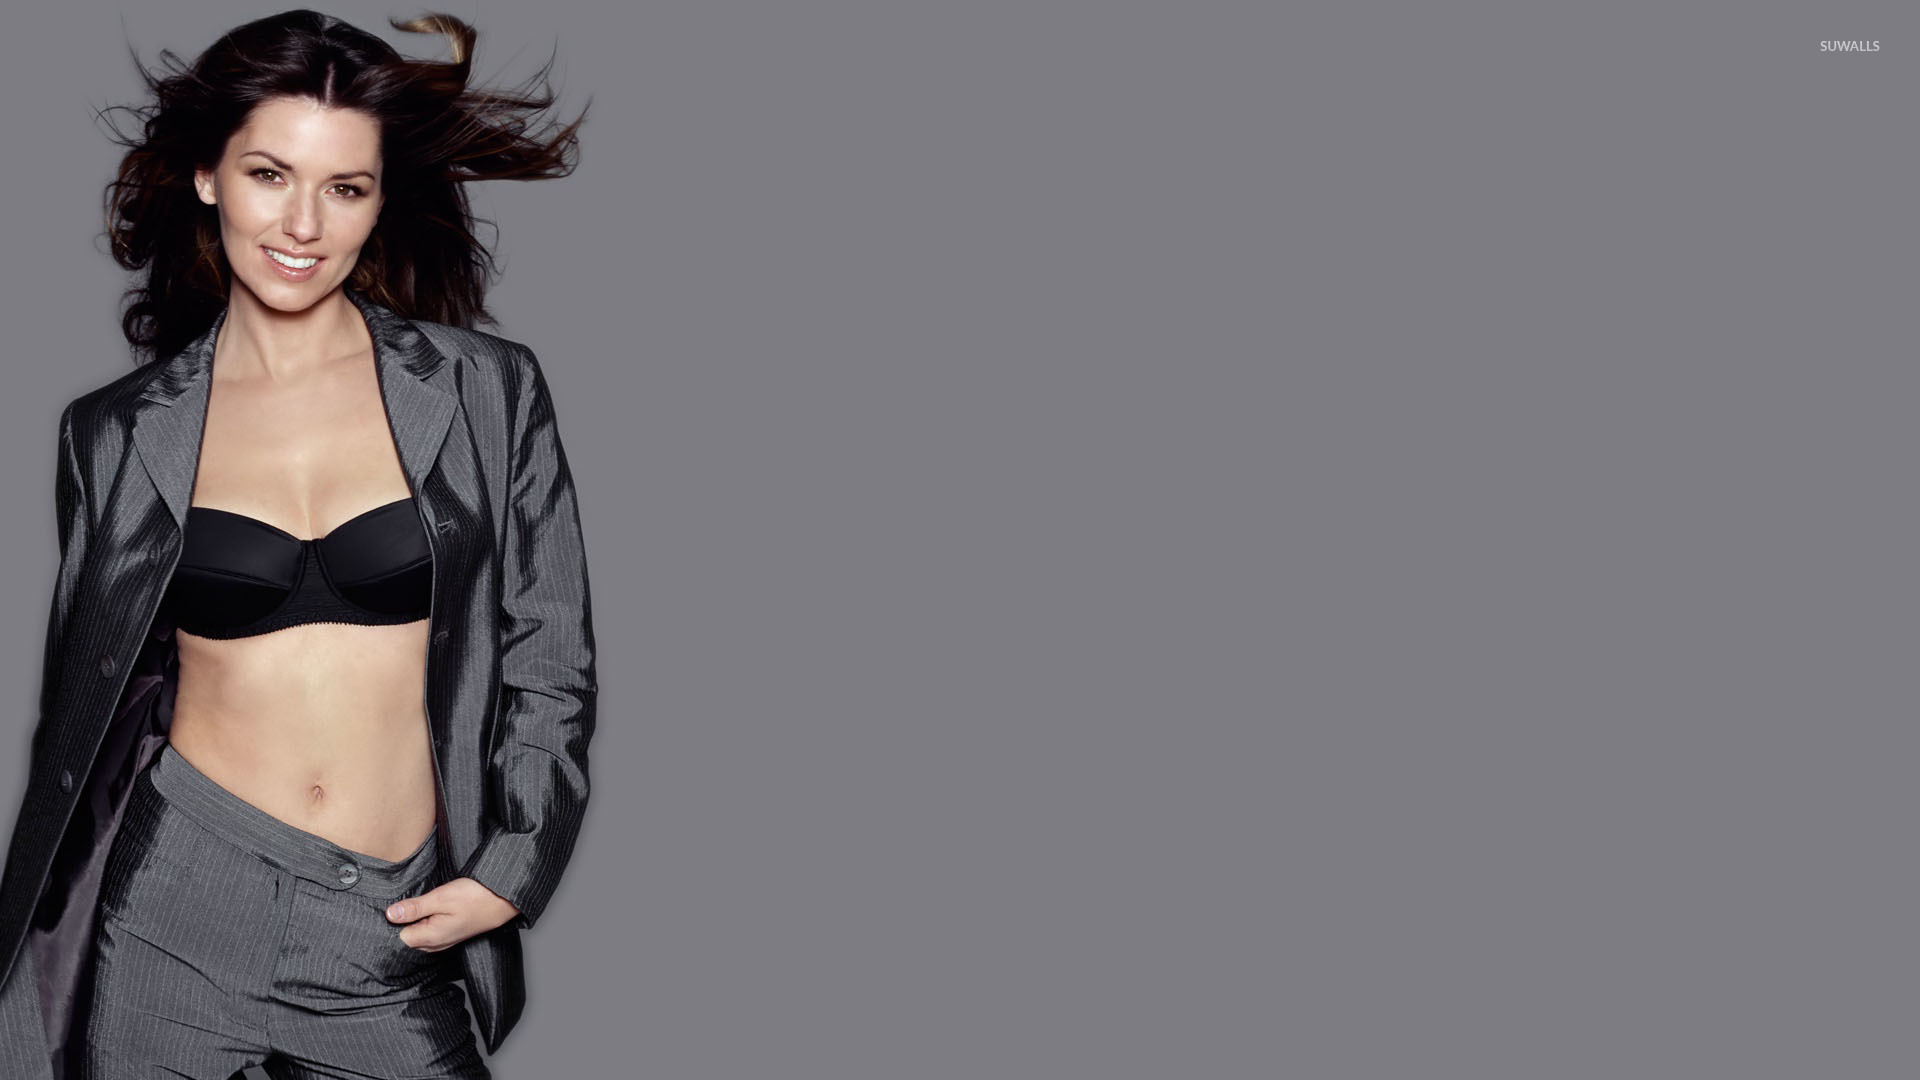 La Intérprete de ‘Man I Feel Like A Woman’ Shania Twain lanzará álbum reeditado